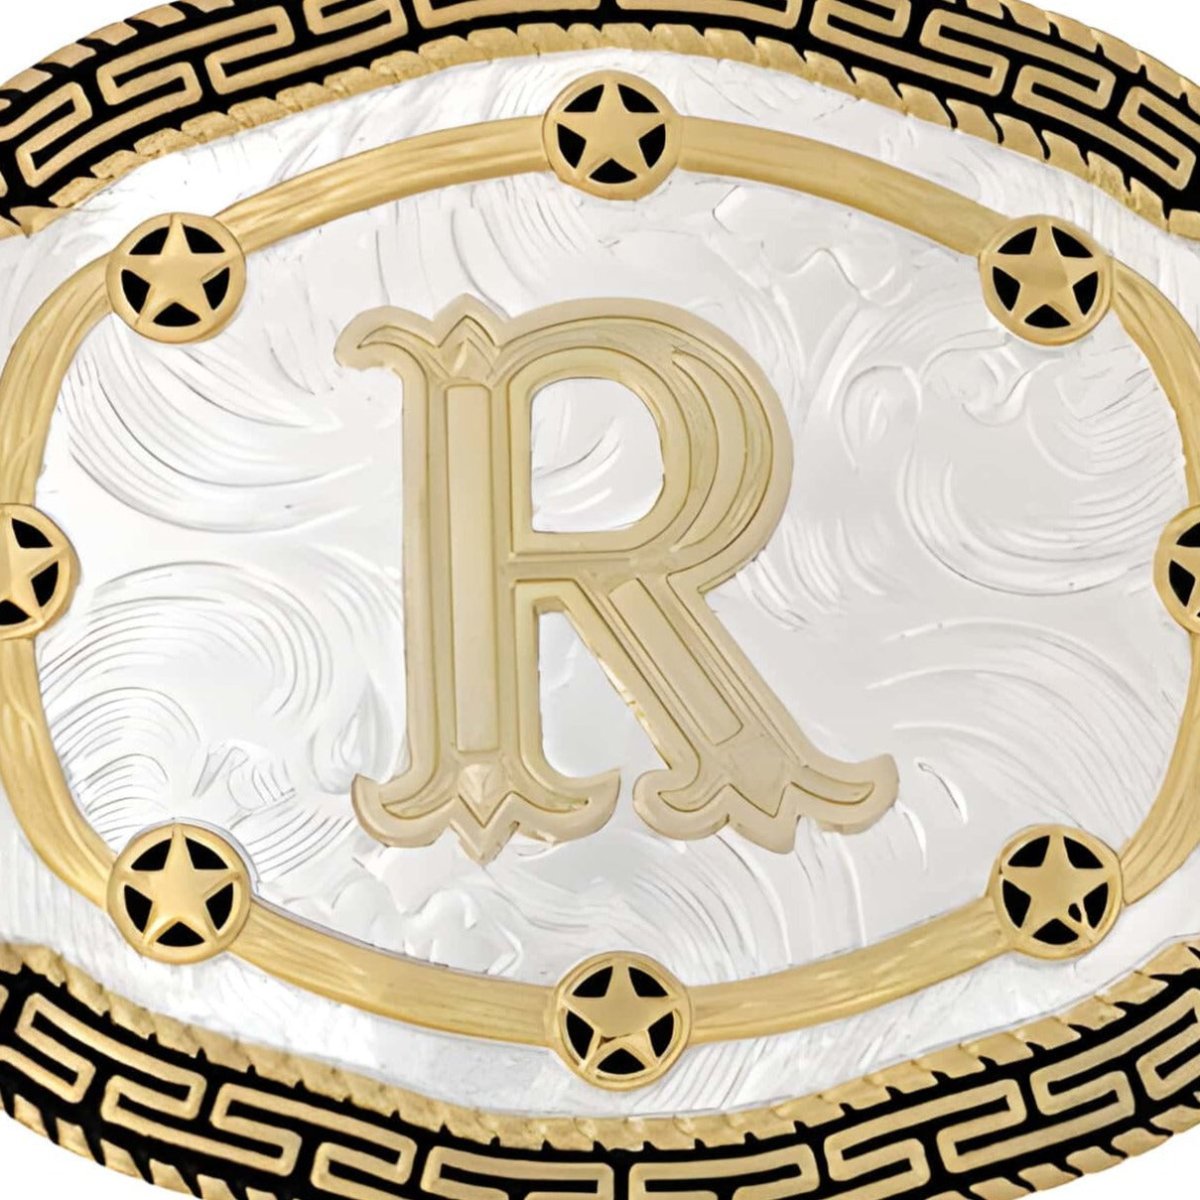 Boucle de ceinture Alphabet, R, modèle Rida - La Boutique de la Ceinture